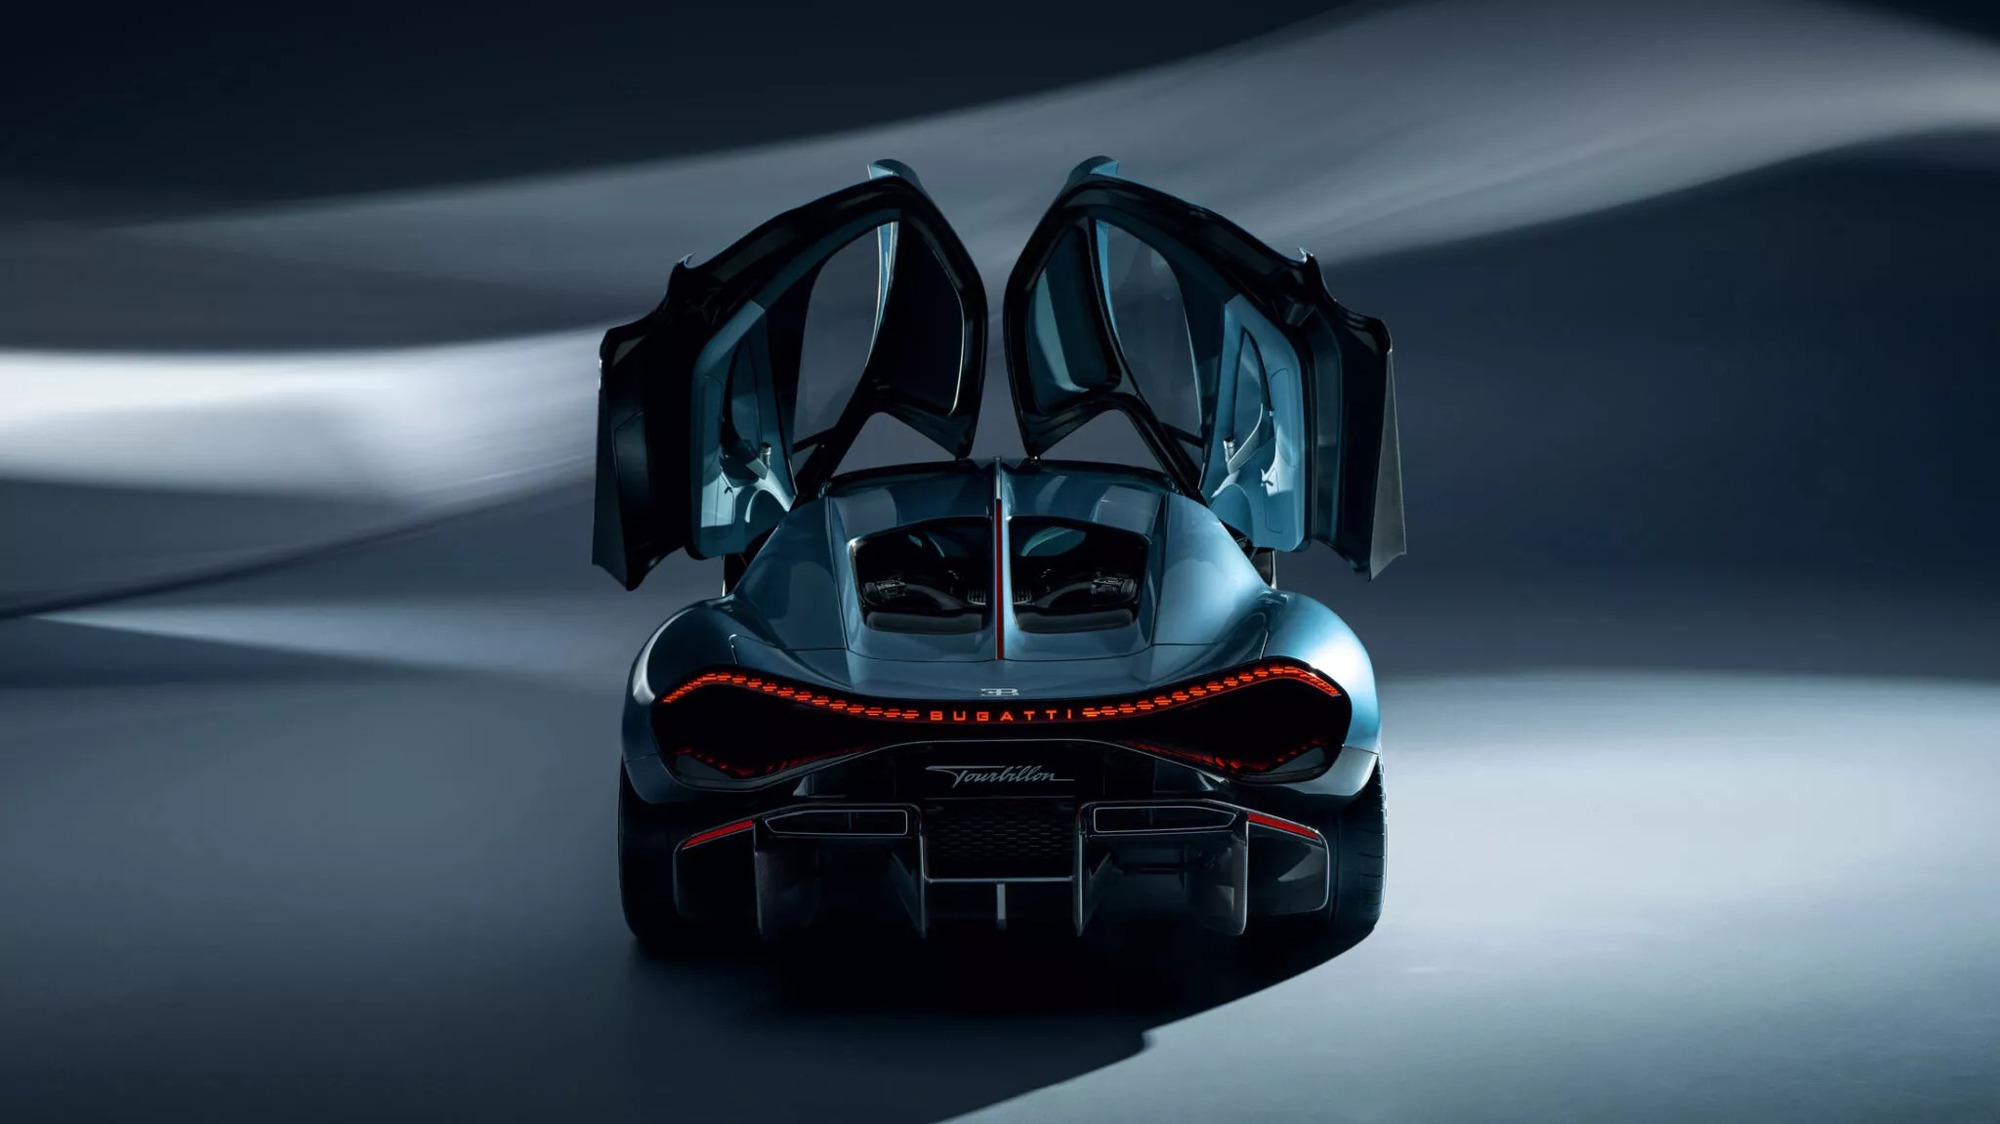 Bugatti Tourbillon Hybrid ra mắt: Mọi thông số khủng hơn Chiron, 0-100km/h chỉ trong 2 giây, tối đa 445km/h- Ảnh 6.